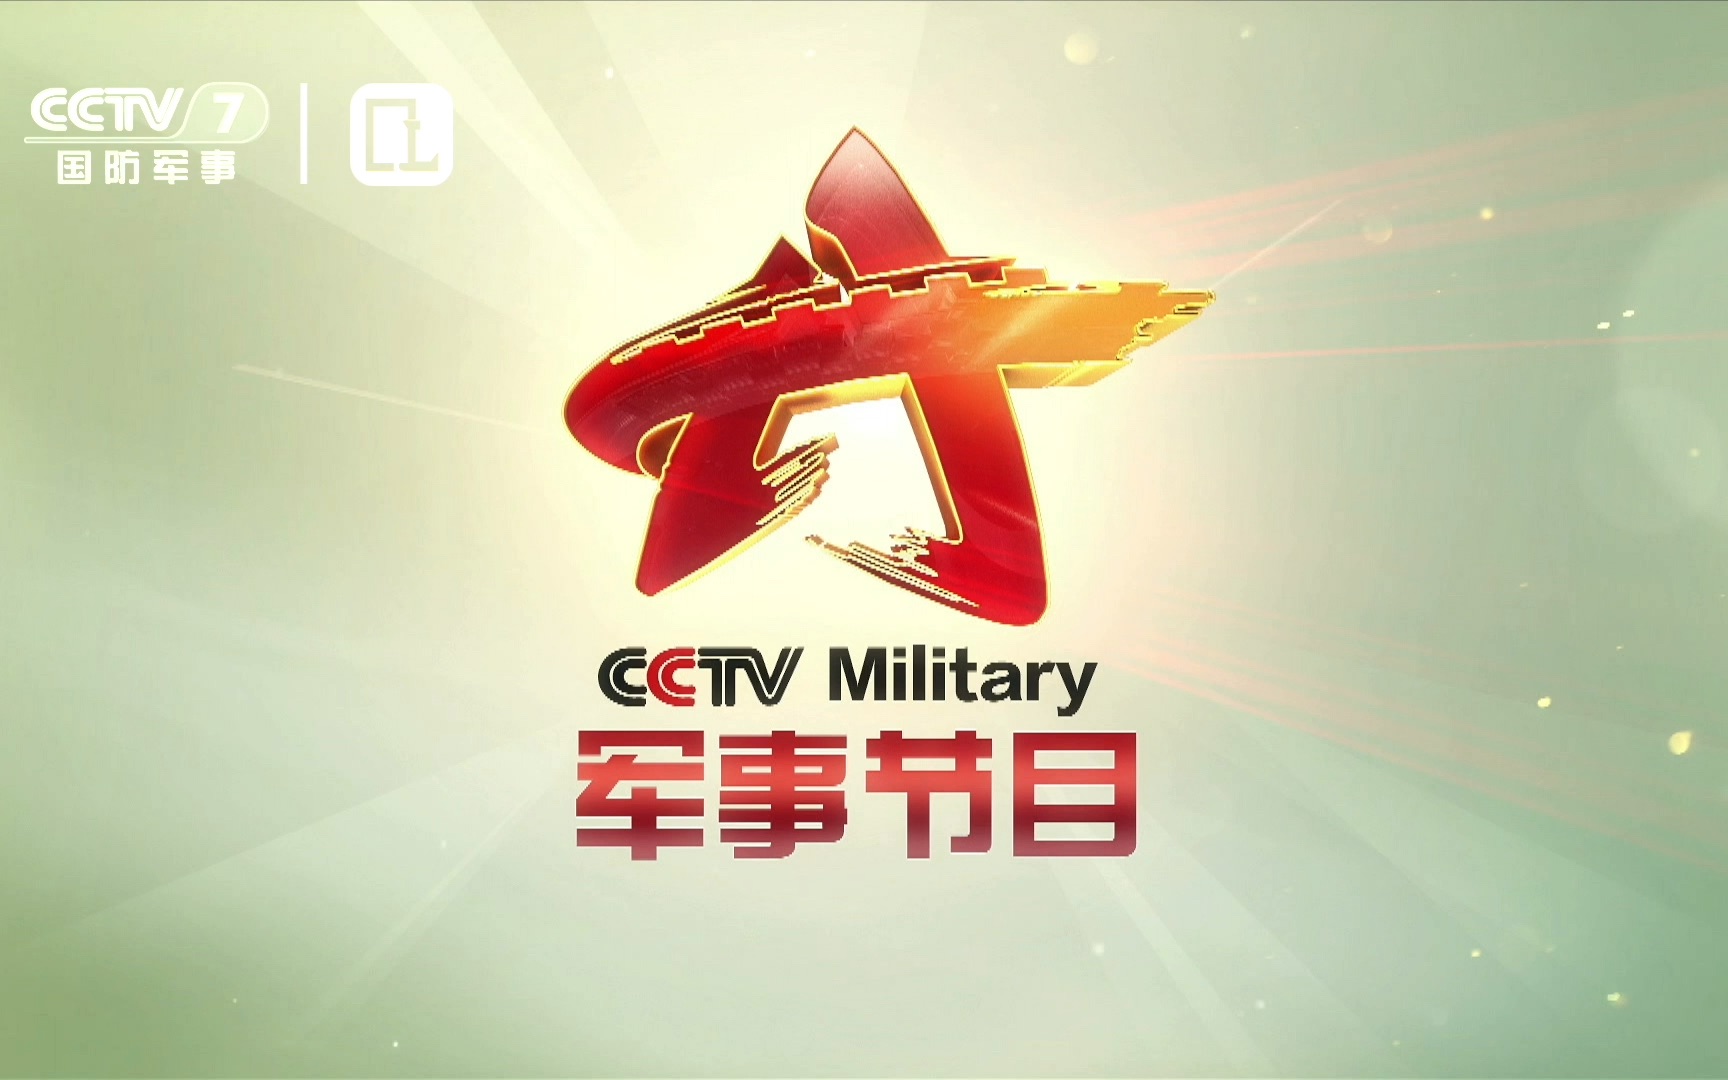 【电视观察】【固定收录】cctv7国防军事频道军事节目logo演绎